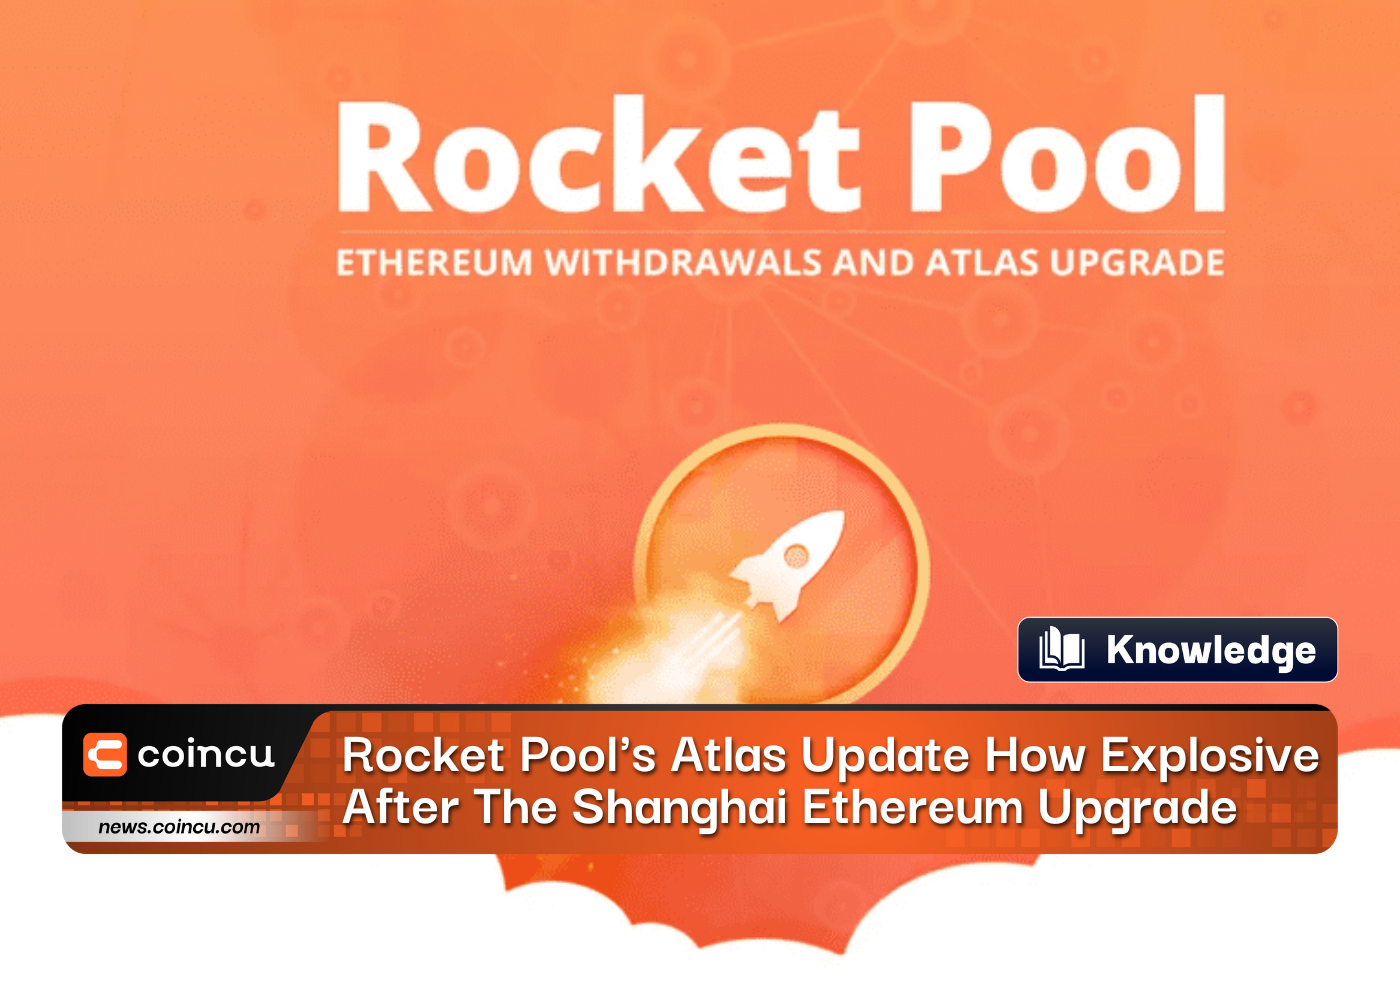 La mise à jour de l'Atlas de Rocket Pool est explosive après la mise à niveau de Shanghai Ethereum